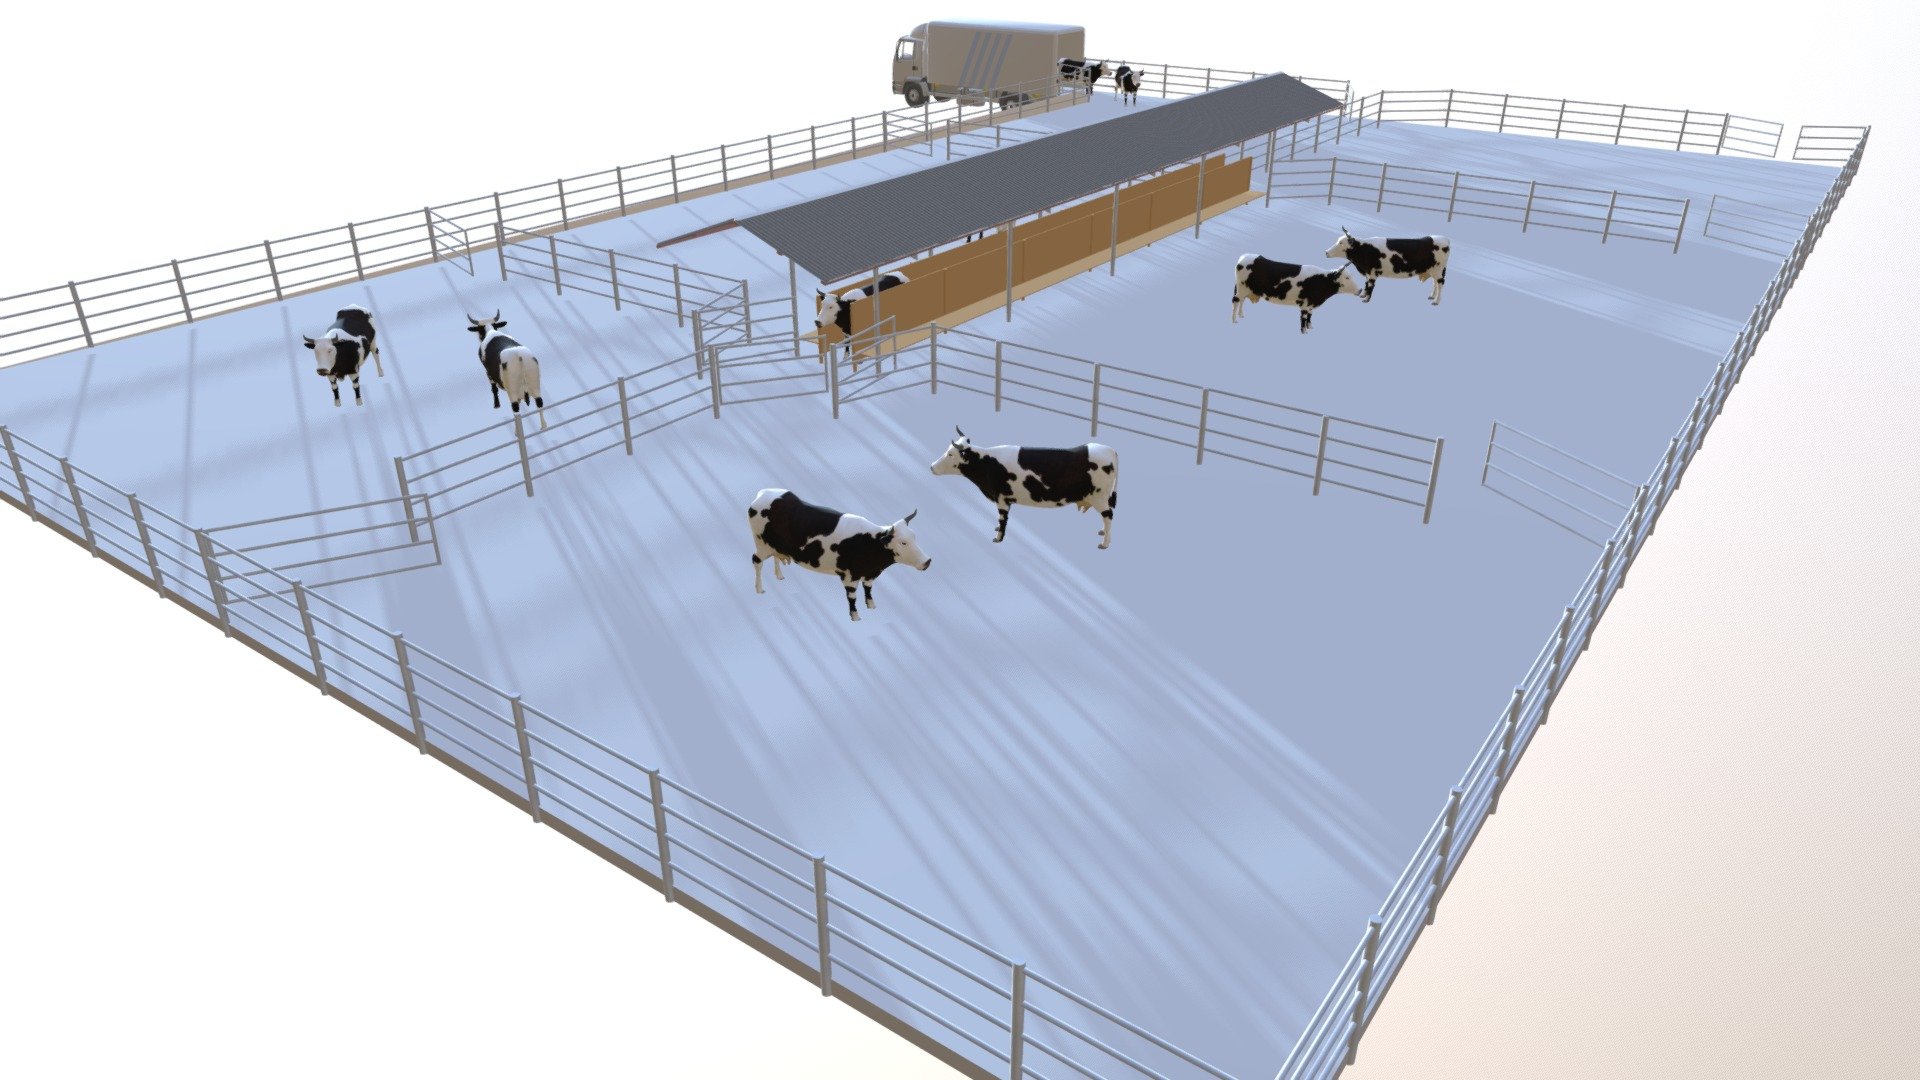 Corral de ganado vacuno - 3D model by Planos 3D Osorno (@Osorno3d) [406fe13]